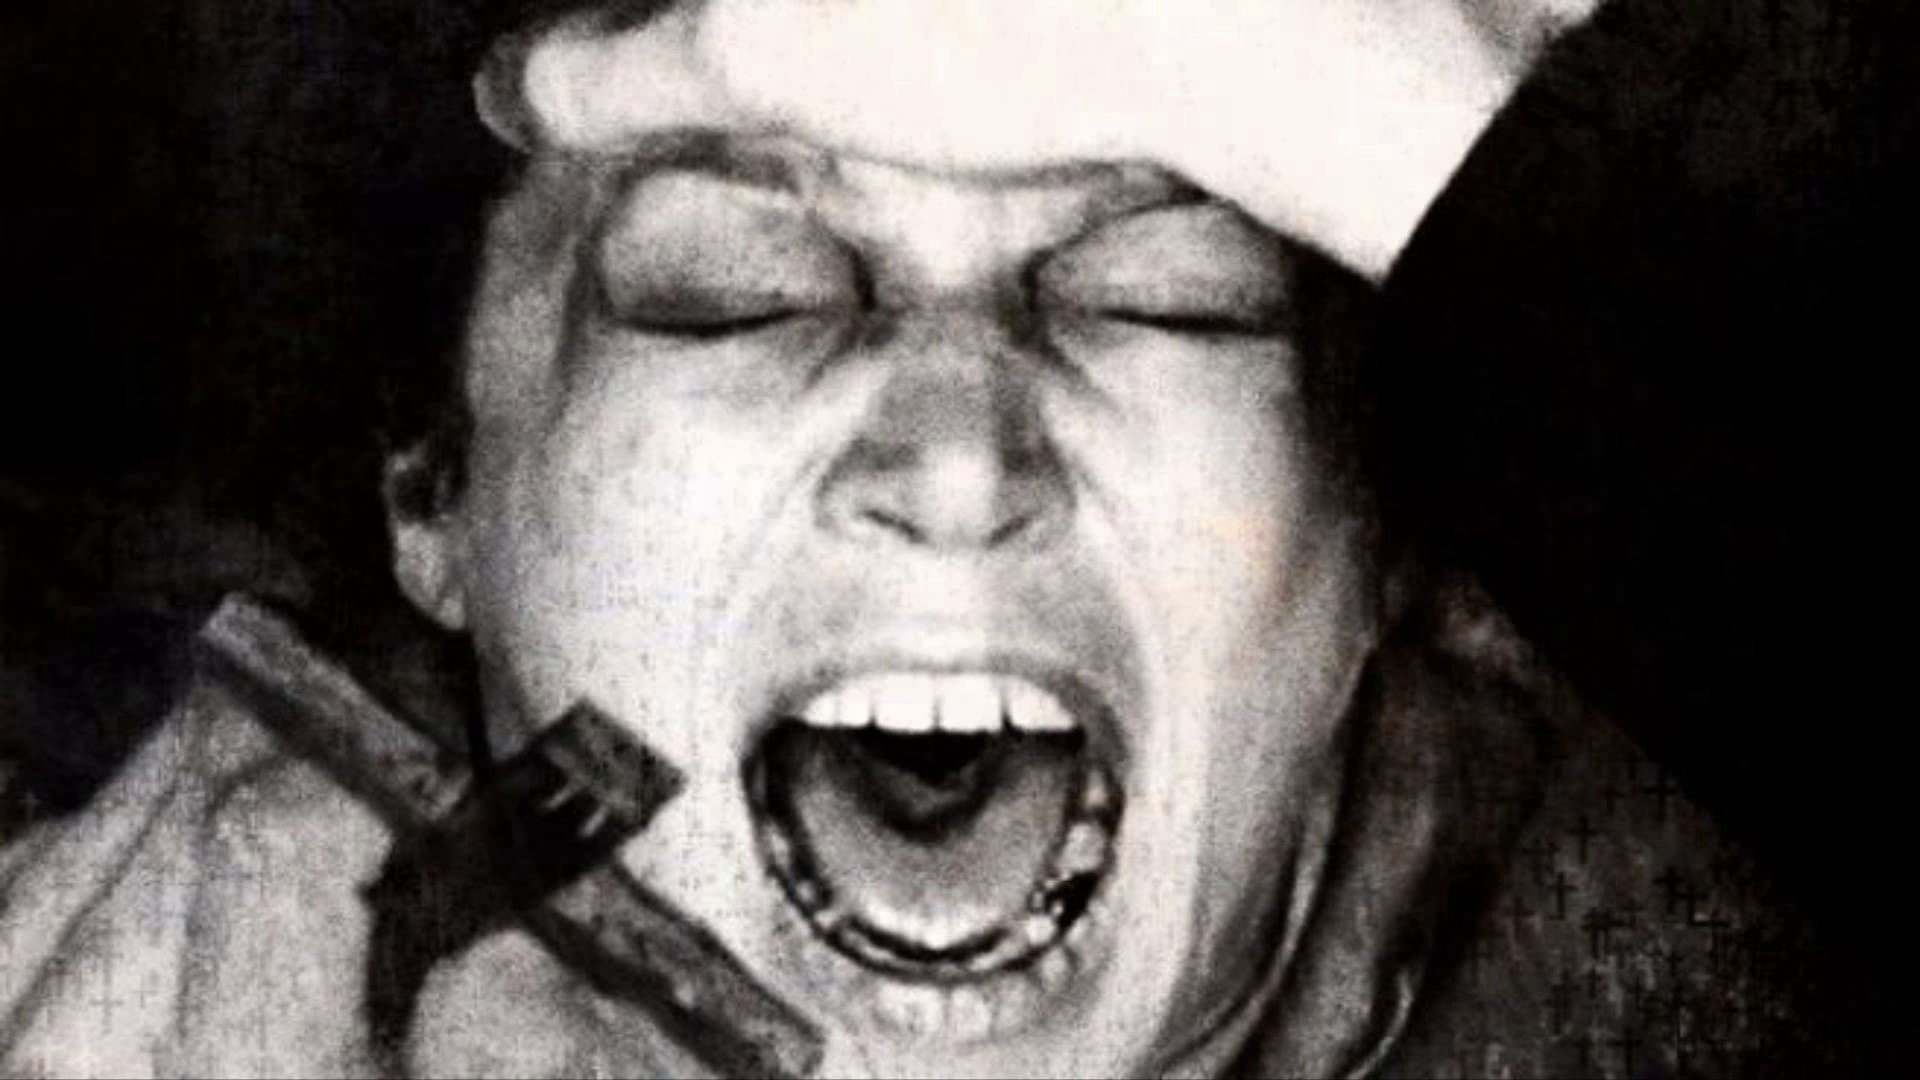 Exorcizmus Anny Ecklundovej: najdesivejší americký príbeh o démonickom vlastníctve z 1920. rokov 1. storočia XNUMX